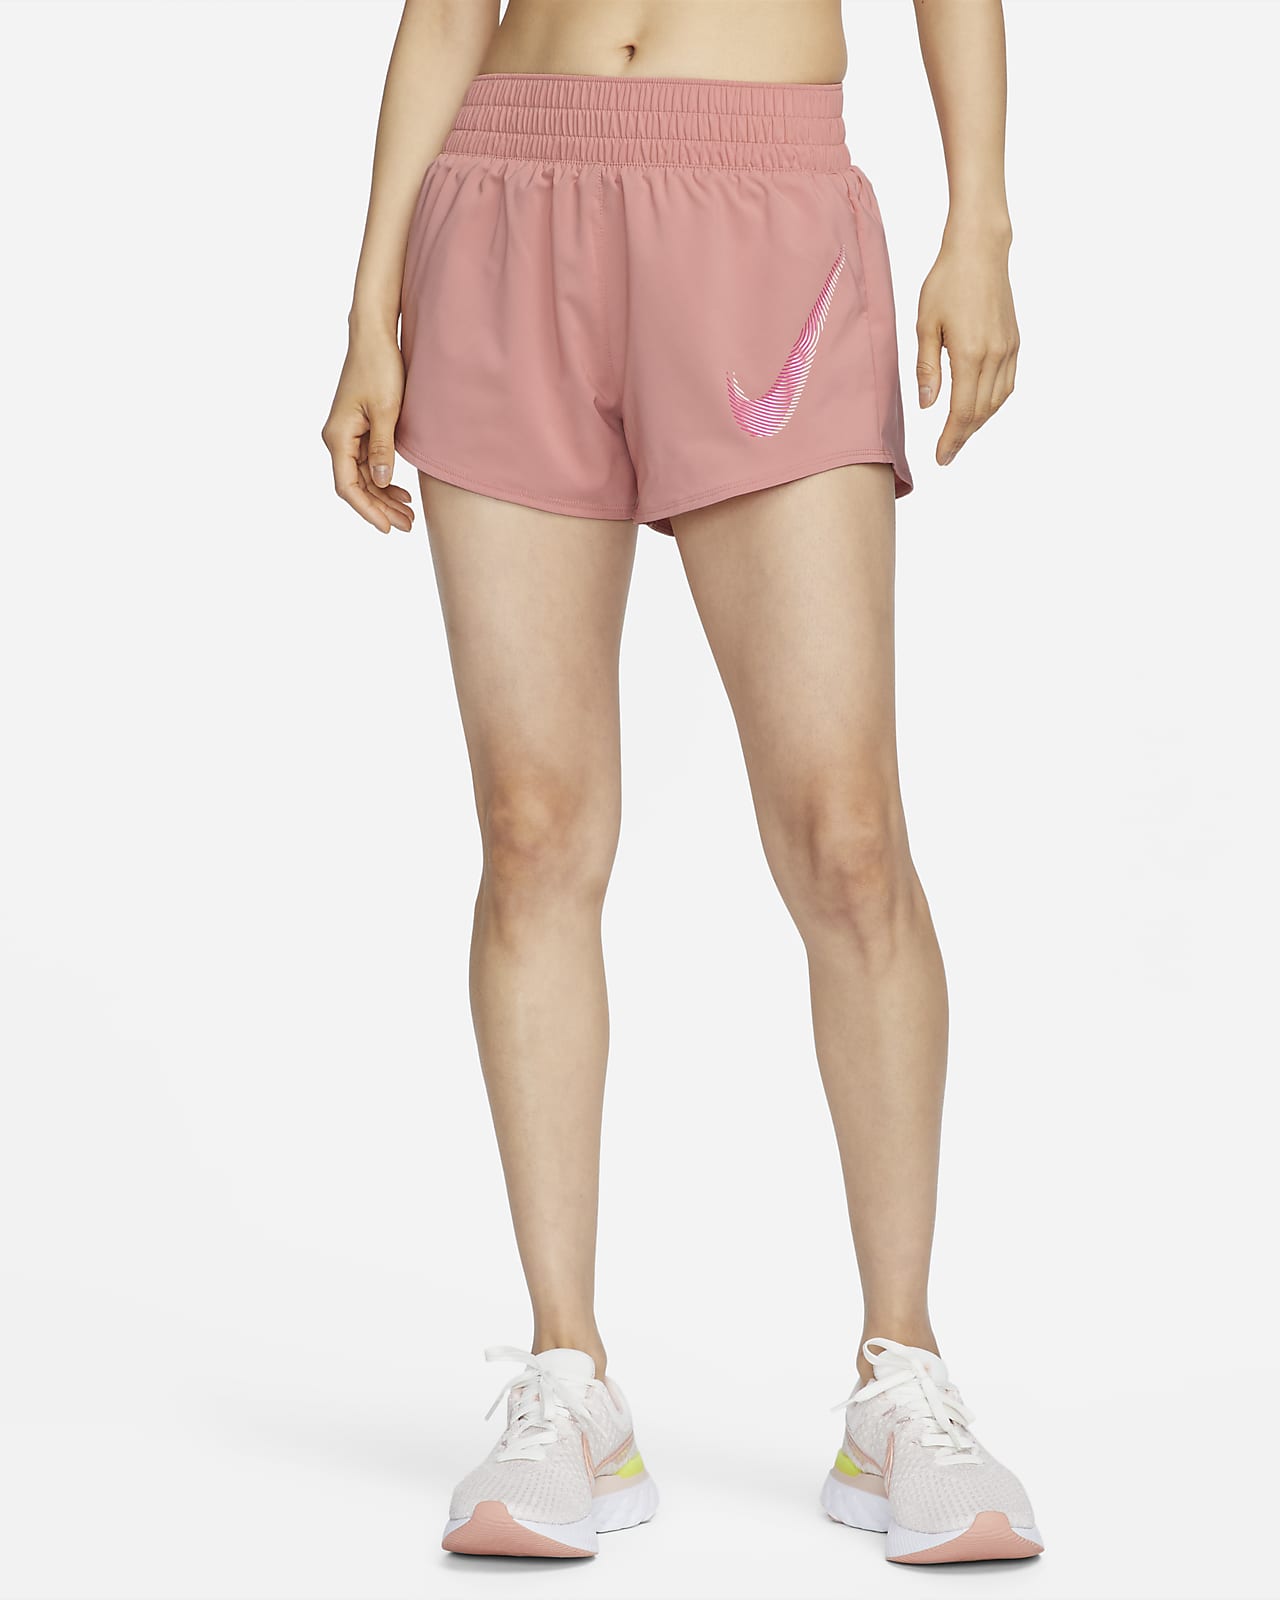 Women's Dri-FIT Shorts. Nike ID